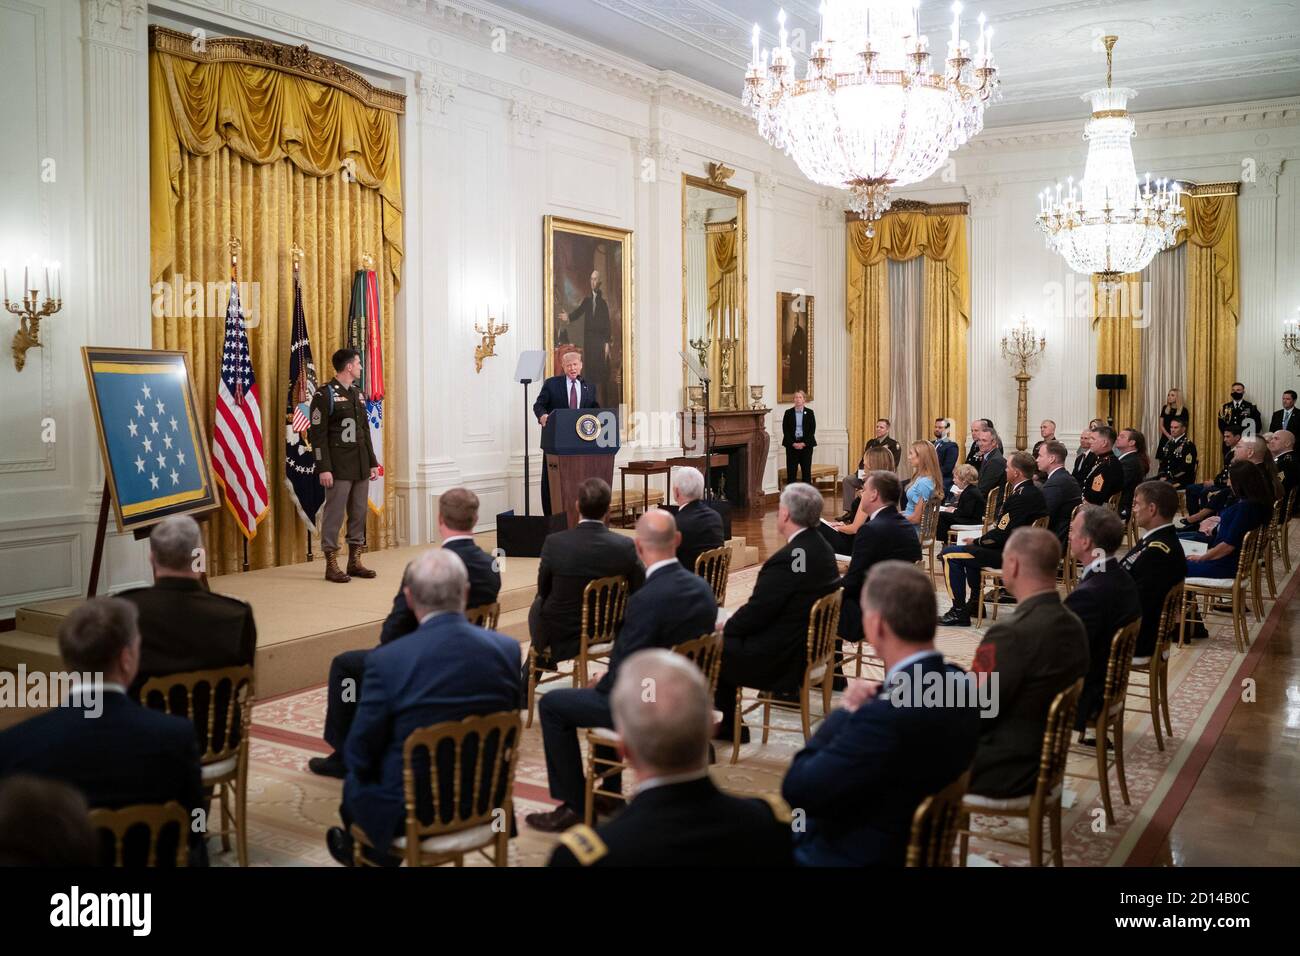 El presidente Trump presenta la Medalla de honor. El presidente Donald J. Trump hace comentarios en la Sala este de la Casa Blanca el viernes, 11 de septiembre de 2020, antes de presentar la Medalla de honor a la SGT del Ejército de los Estados Unidos. El mayor Thomas Patrick Payne por sus heroicas acciones durante una misión de rescate de rehenes en octubre de 2015 en la provincia de Kirkuk en Irak. Foto de stock